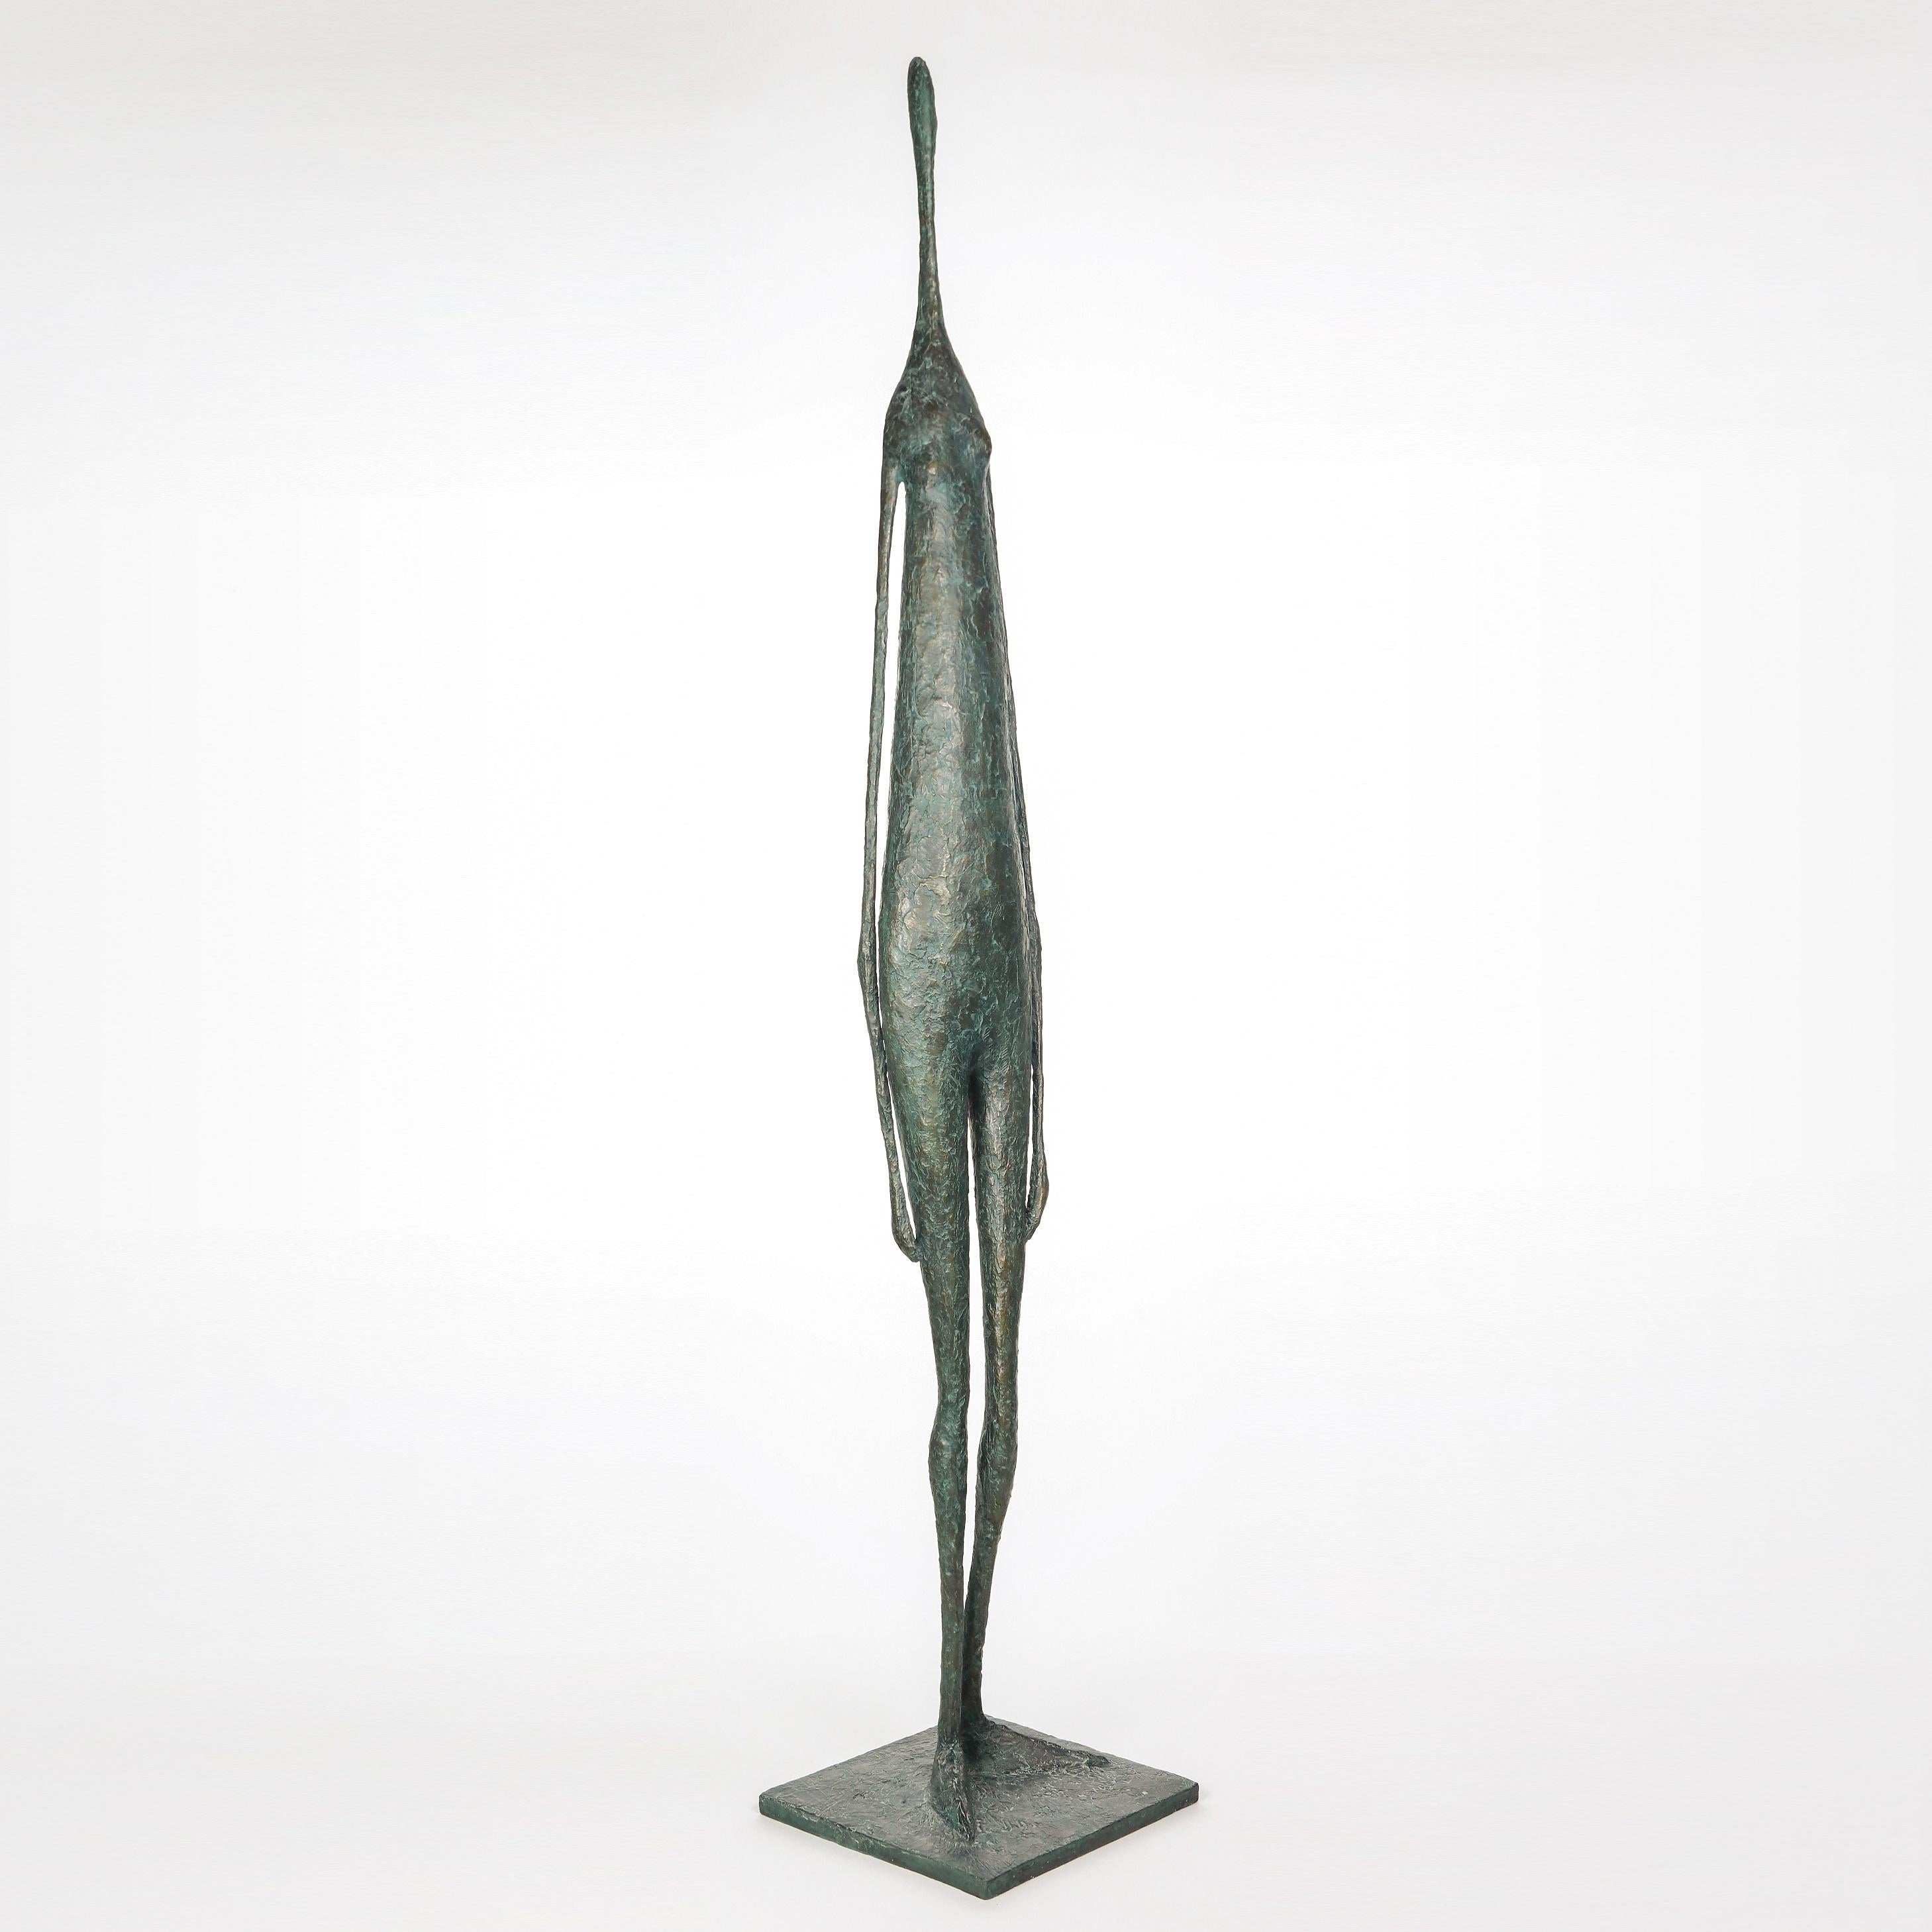 Large standing figure IV est une sculpture en bronze de l'artiste contemporain français Pierre Yermia, dont les dimensions sont de 147 × 28 × 26 cm (57.9 × 11 × 10.2 in). 
La sculpture est signée et numérotée, elle fait partie d'une édition limitée